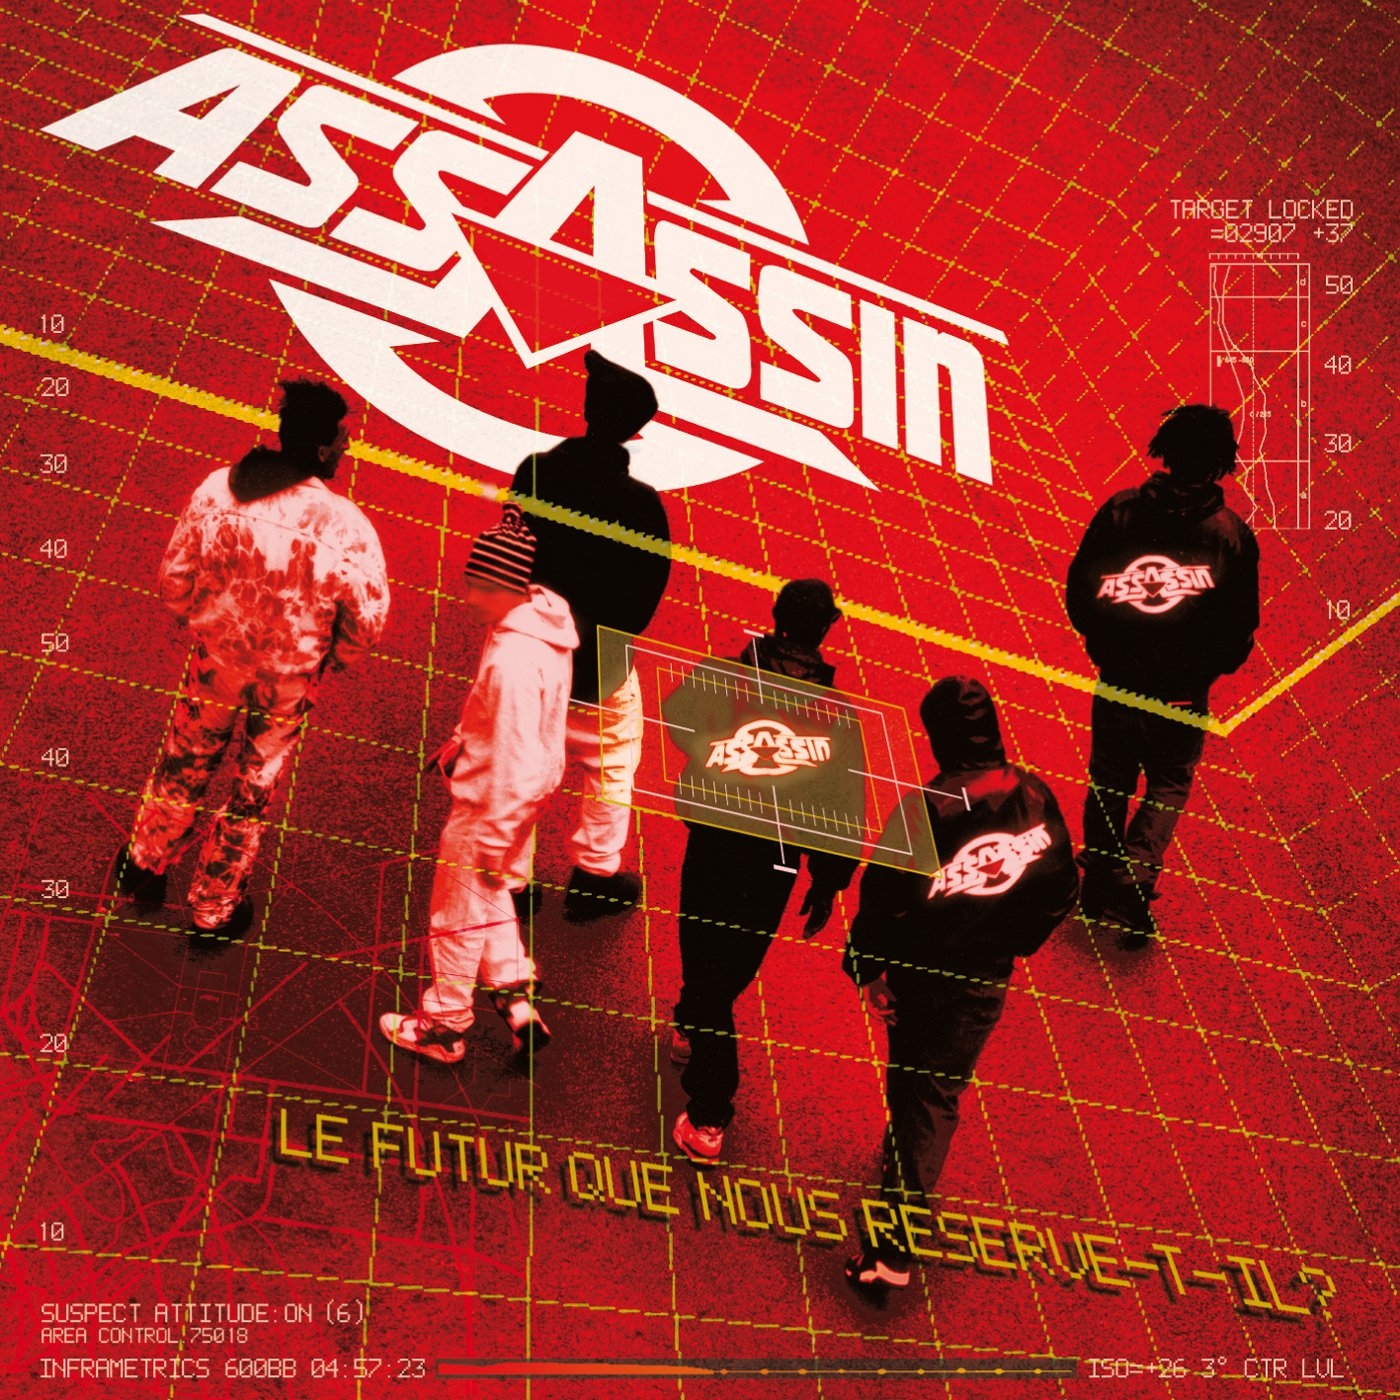 Album vinyle "Assassin "- Le futur que nous reserve-t-il ? de assassin sur Scredboutique.com